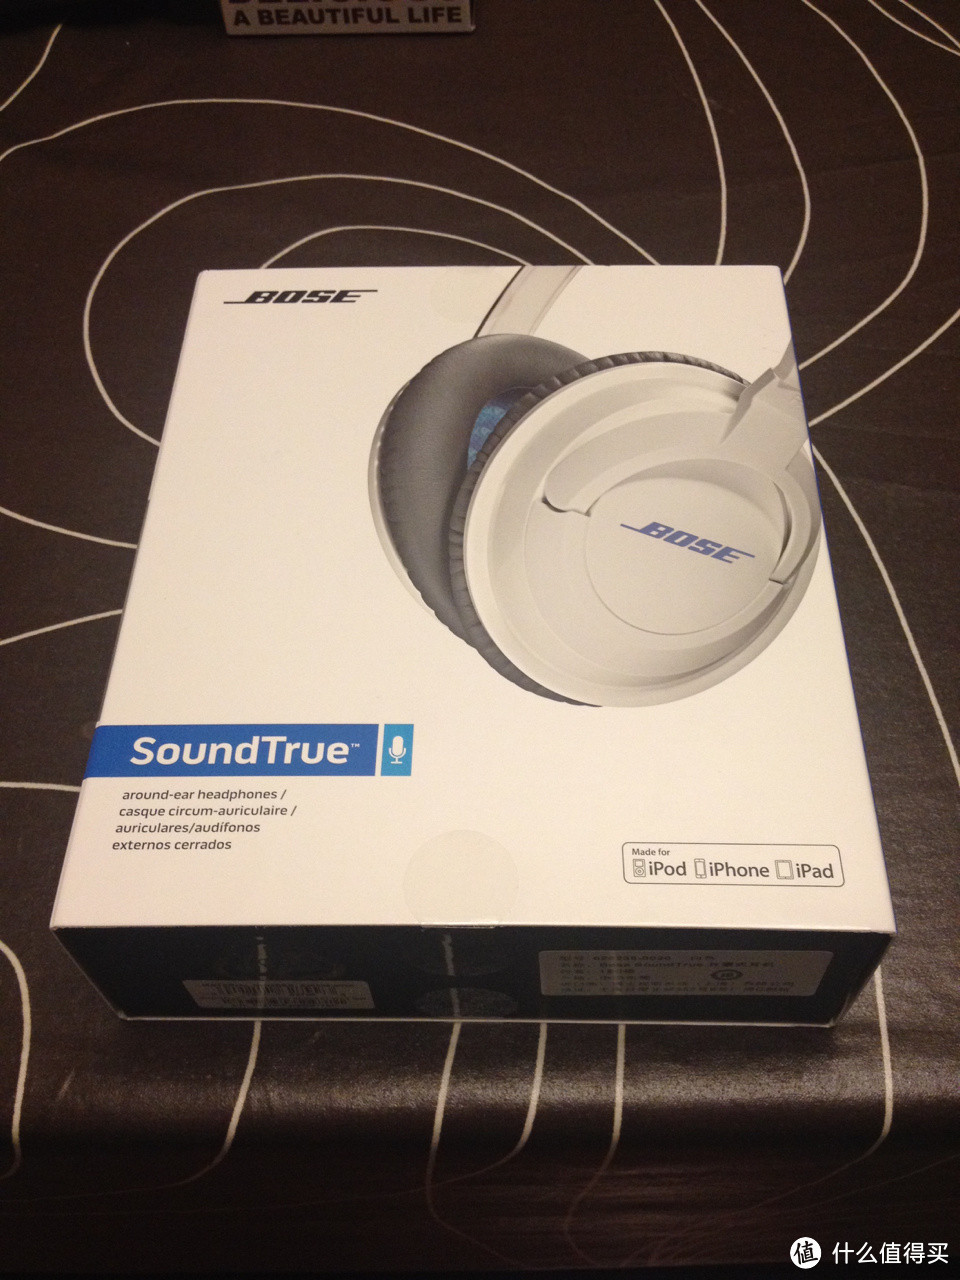 Bose 博士 SoundTrue 头戴式耳机、SoundLink Mini 蓝牙音箱